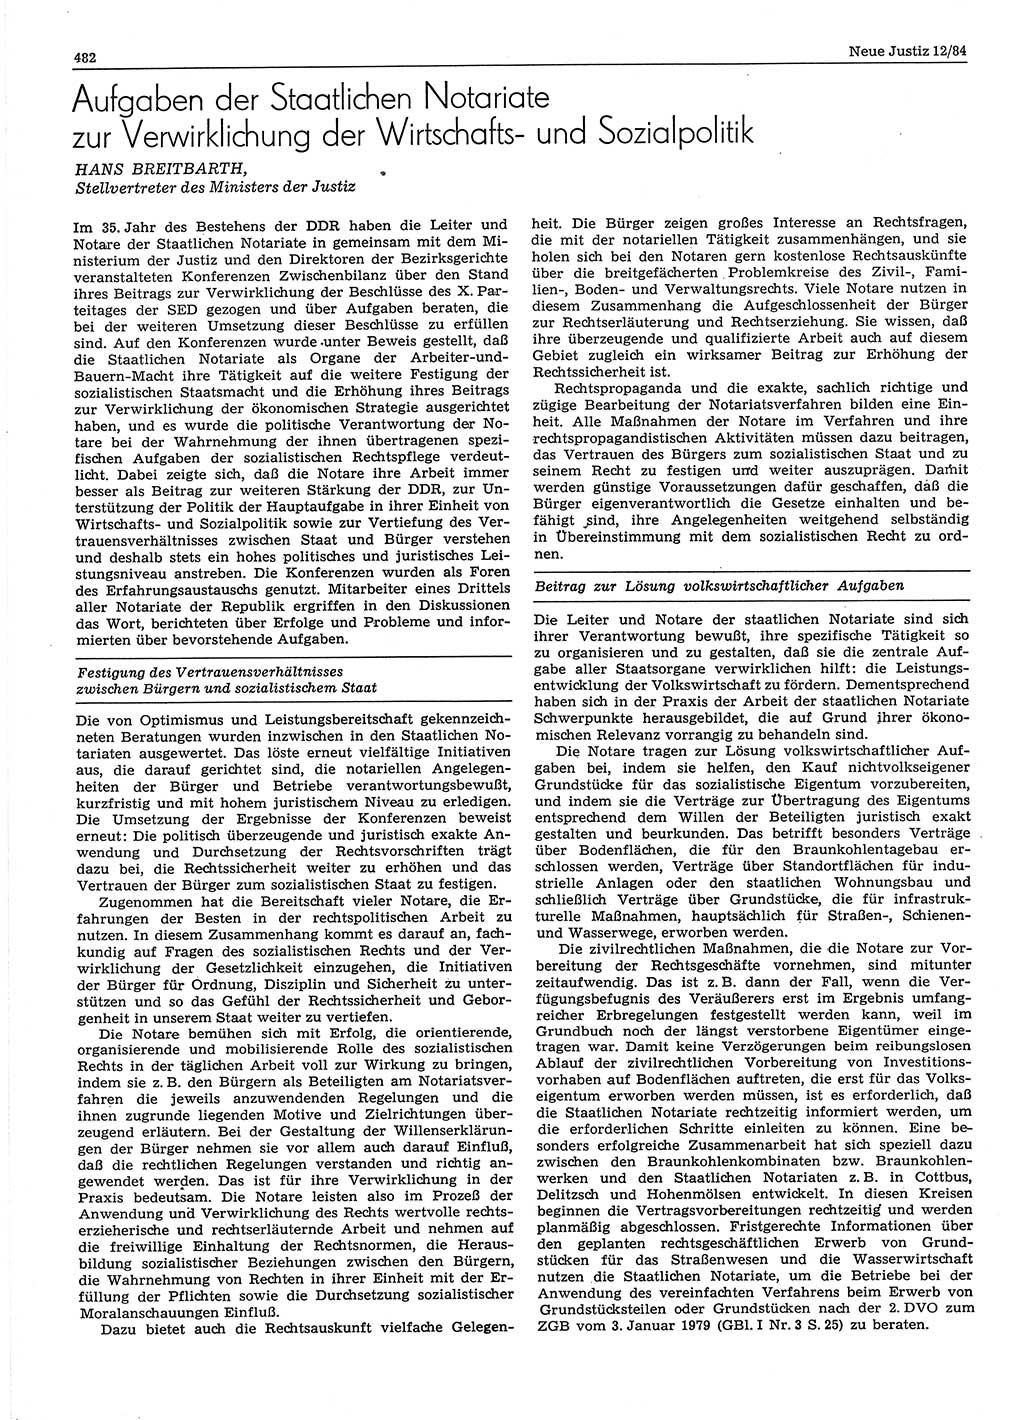 Neue Justiz (NJ), Zeitschrift für sozialistisches Recht und Gesetzlichkeit [Deutsche Demokratische Republik (DDR)], 38. Jahrgang 1984, Seite 482 (NJ DDR 1984, S. 482)